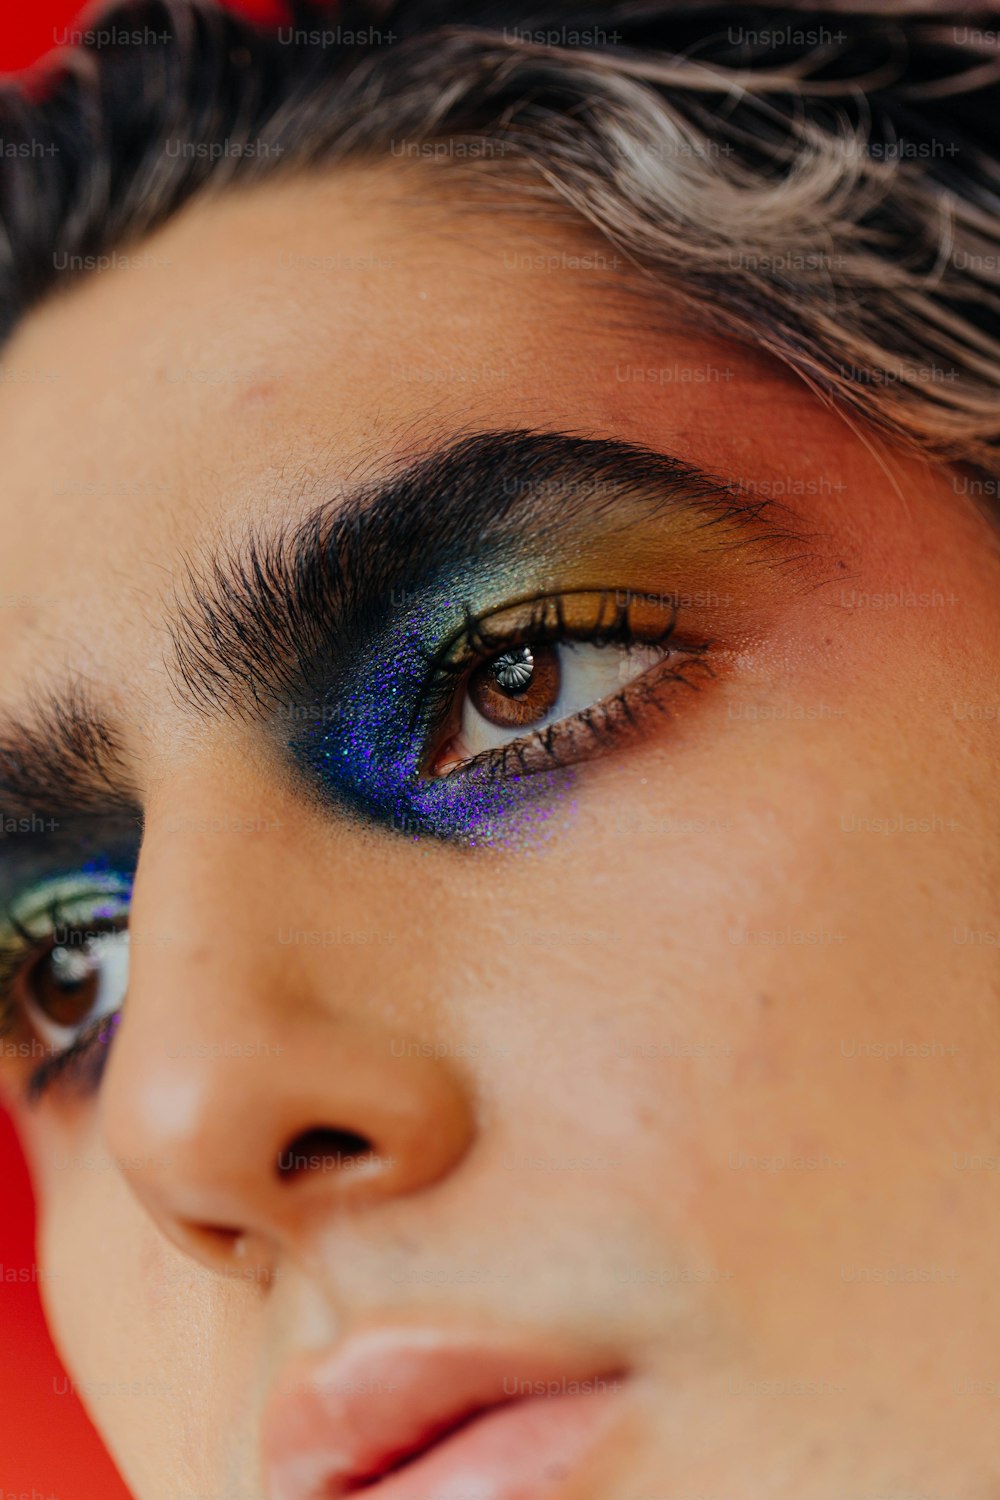 Eine Nahaufnahme einer Person mit blauem und gelbem Augen-Make-up